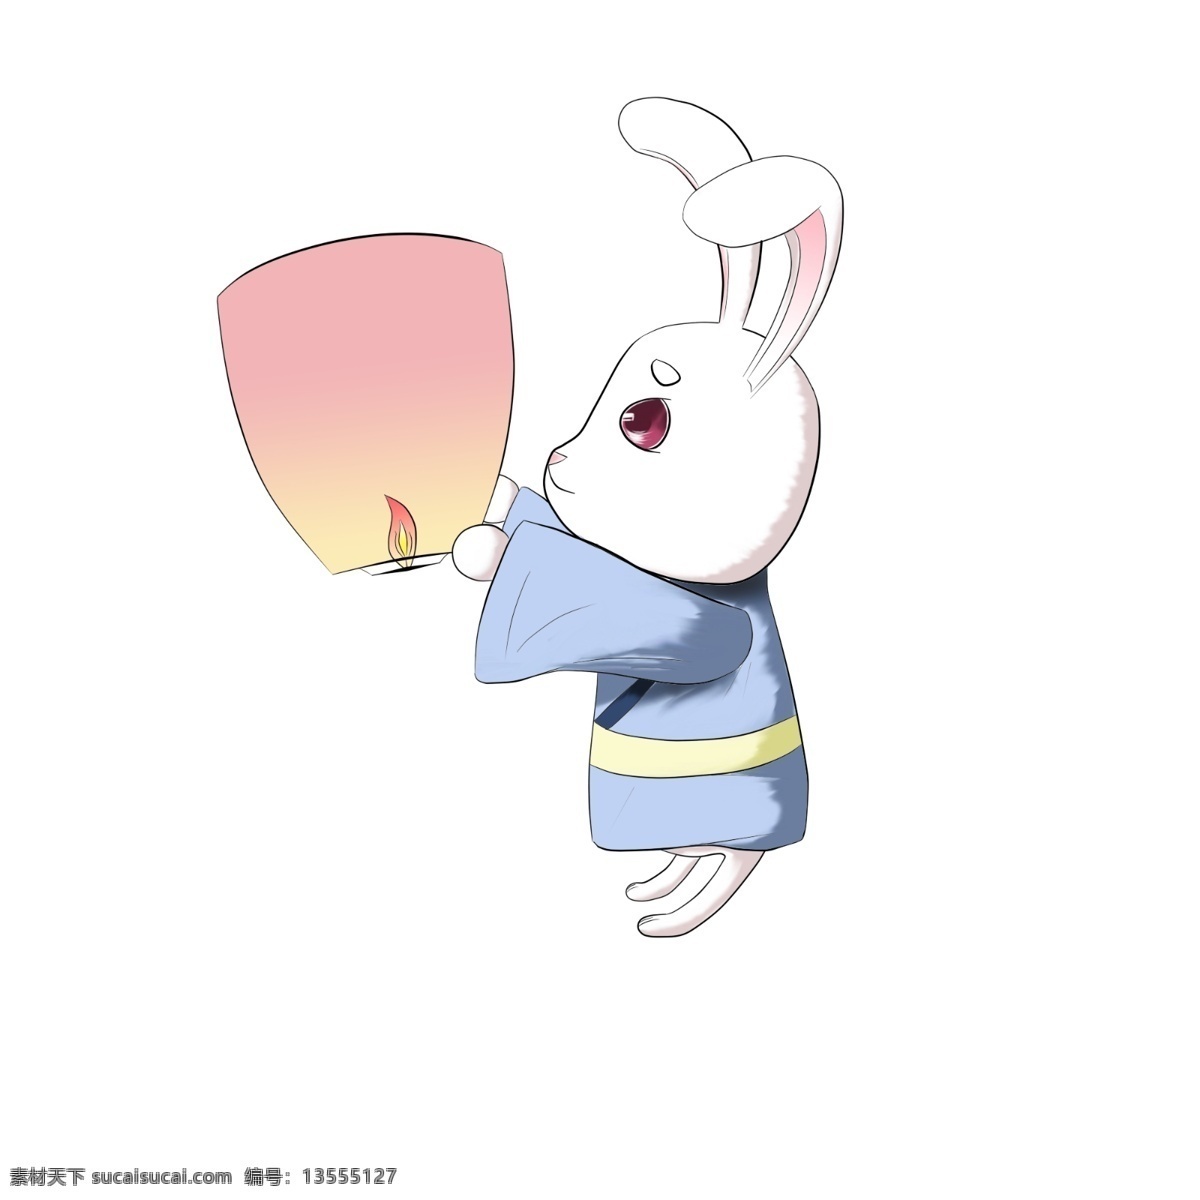 中秋节 月 兔 放 灯 商用 元素 节日 卡通 可爱 兔子 手绘 原创 月兔